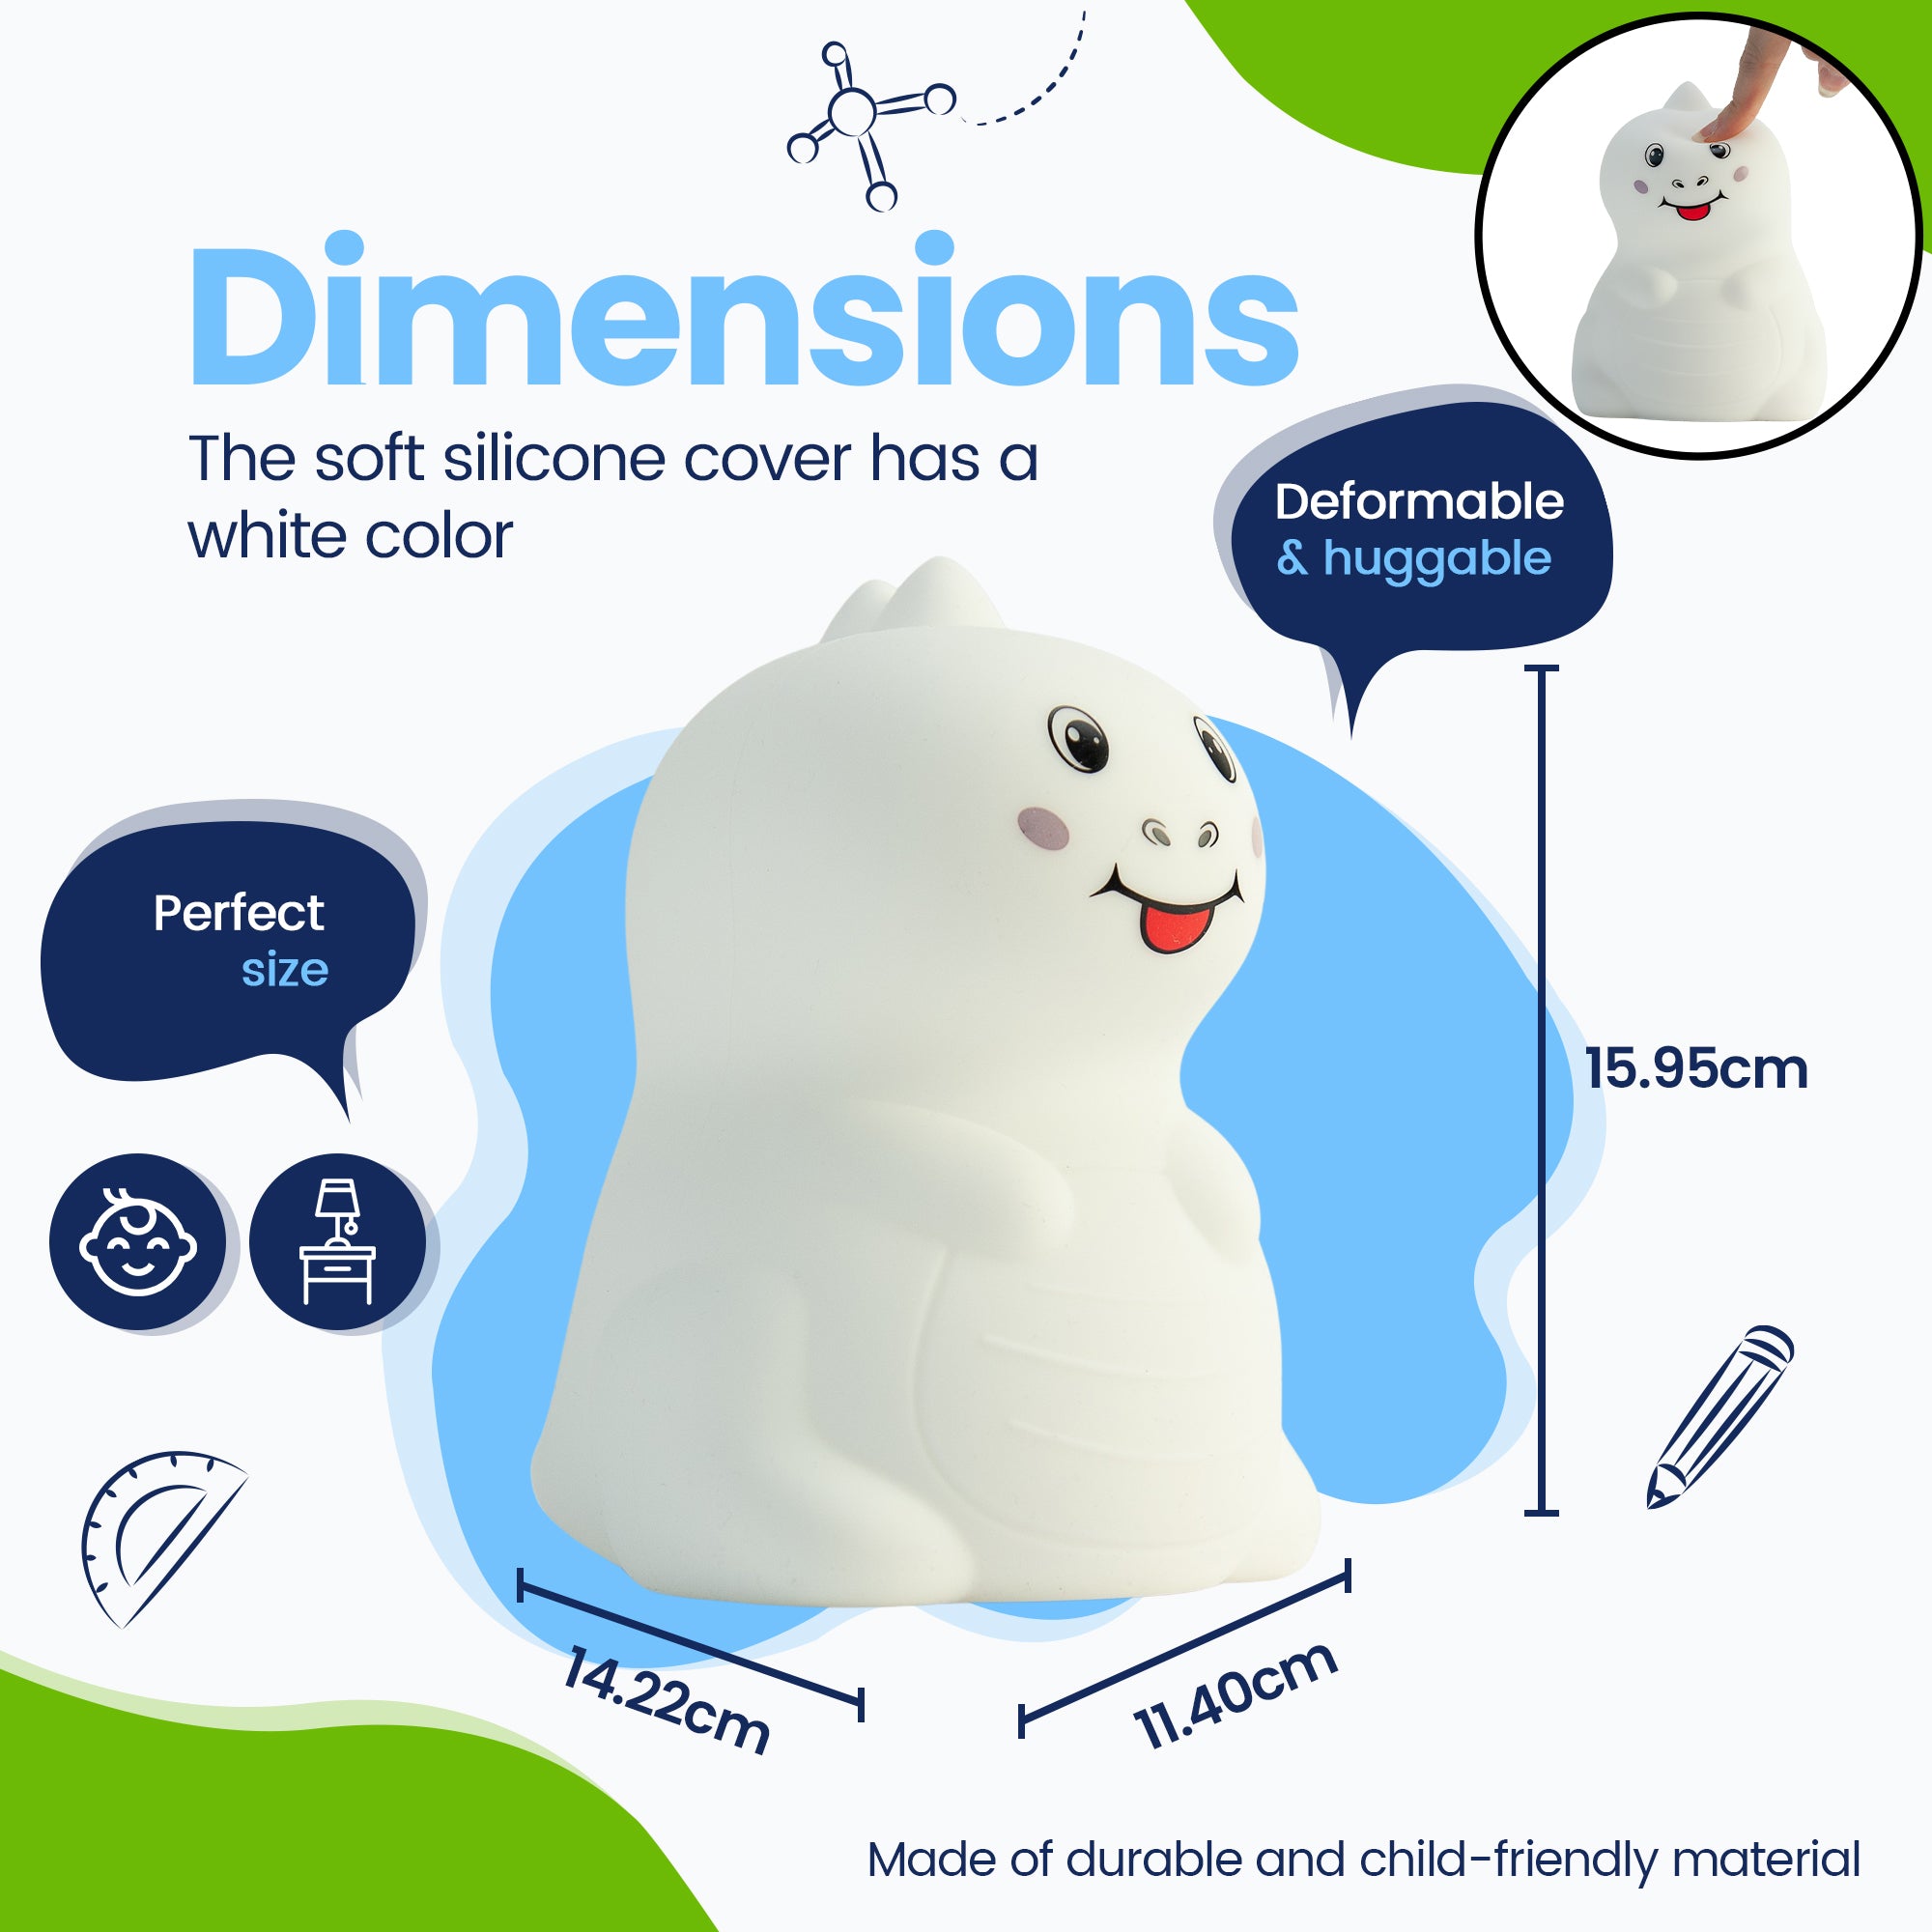 Dimensioner Dino Natlampe - Perfekt størrelse - Premium Design - Silikoneovertrækket er hvidt i farven